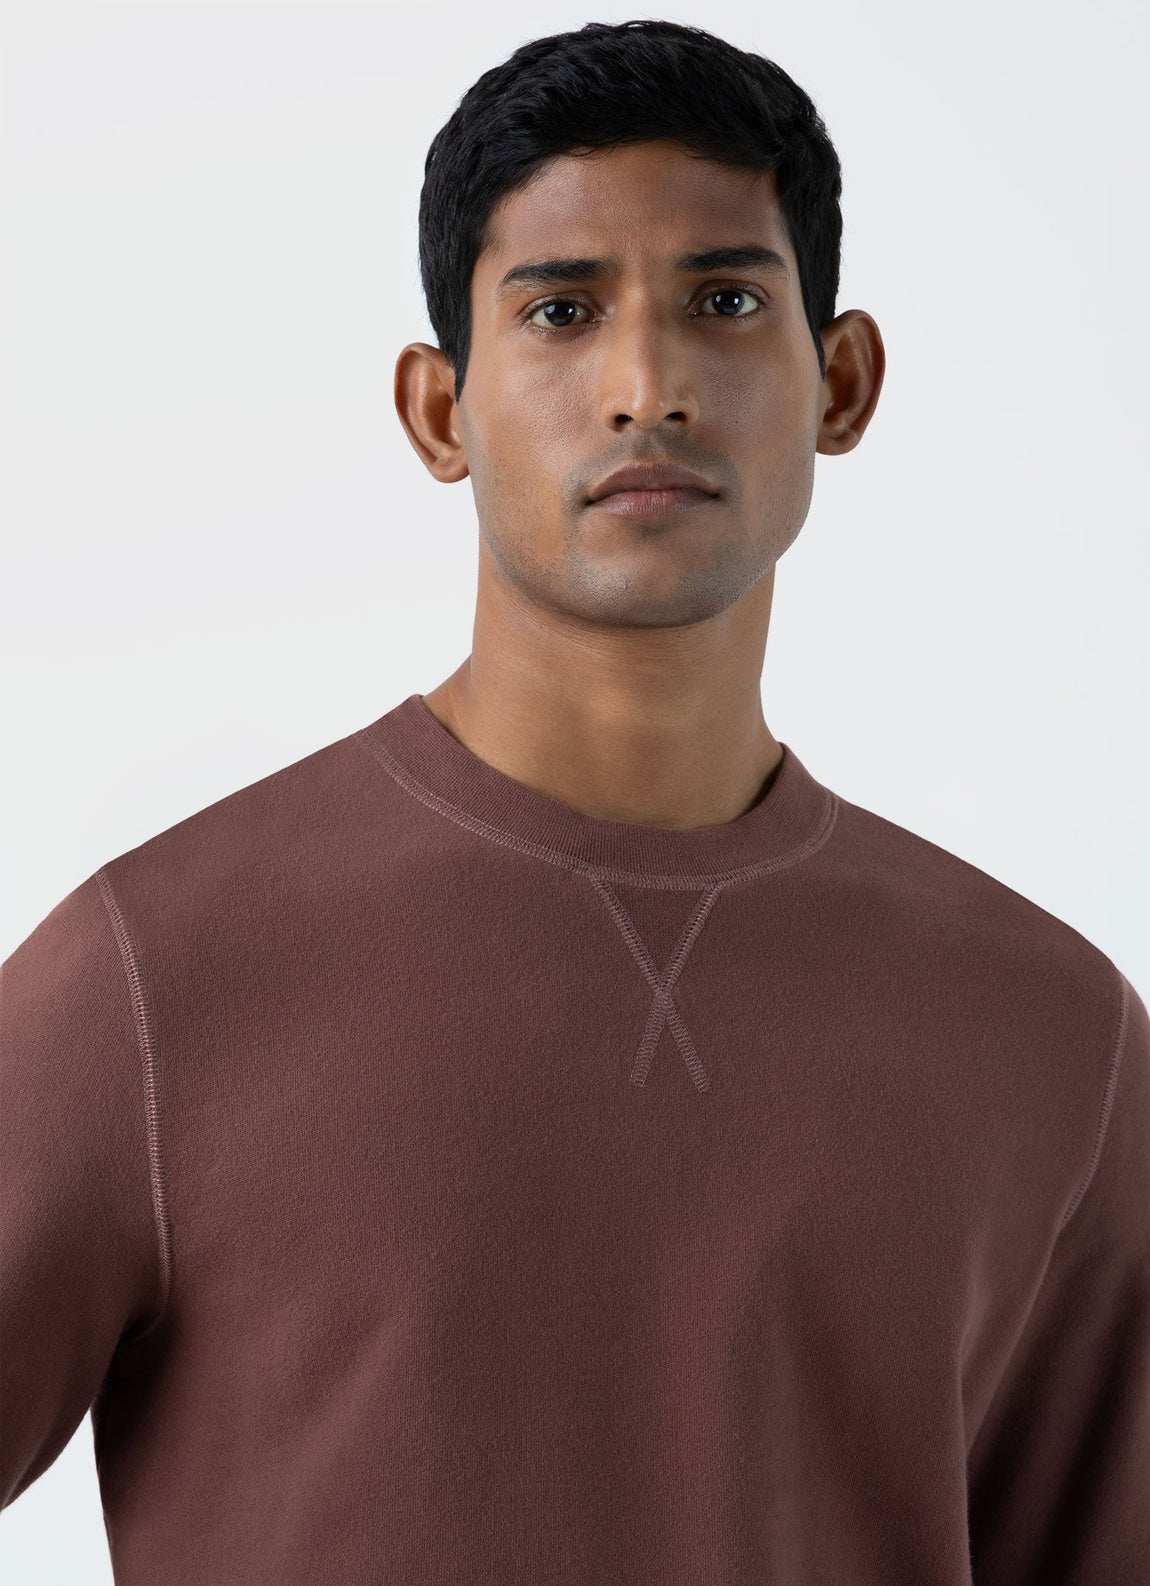 Men's Loopback Sweatshirt in Brown